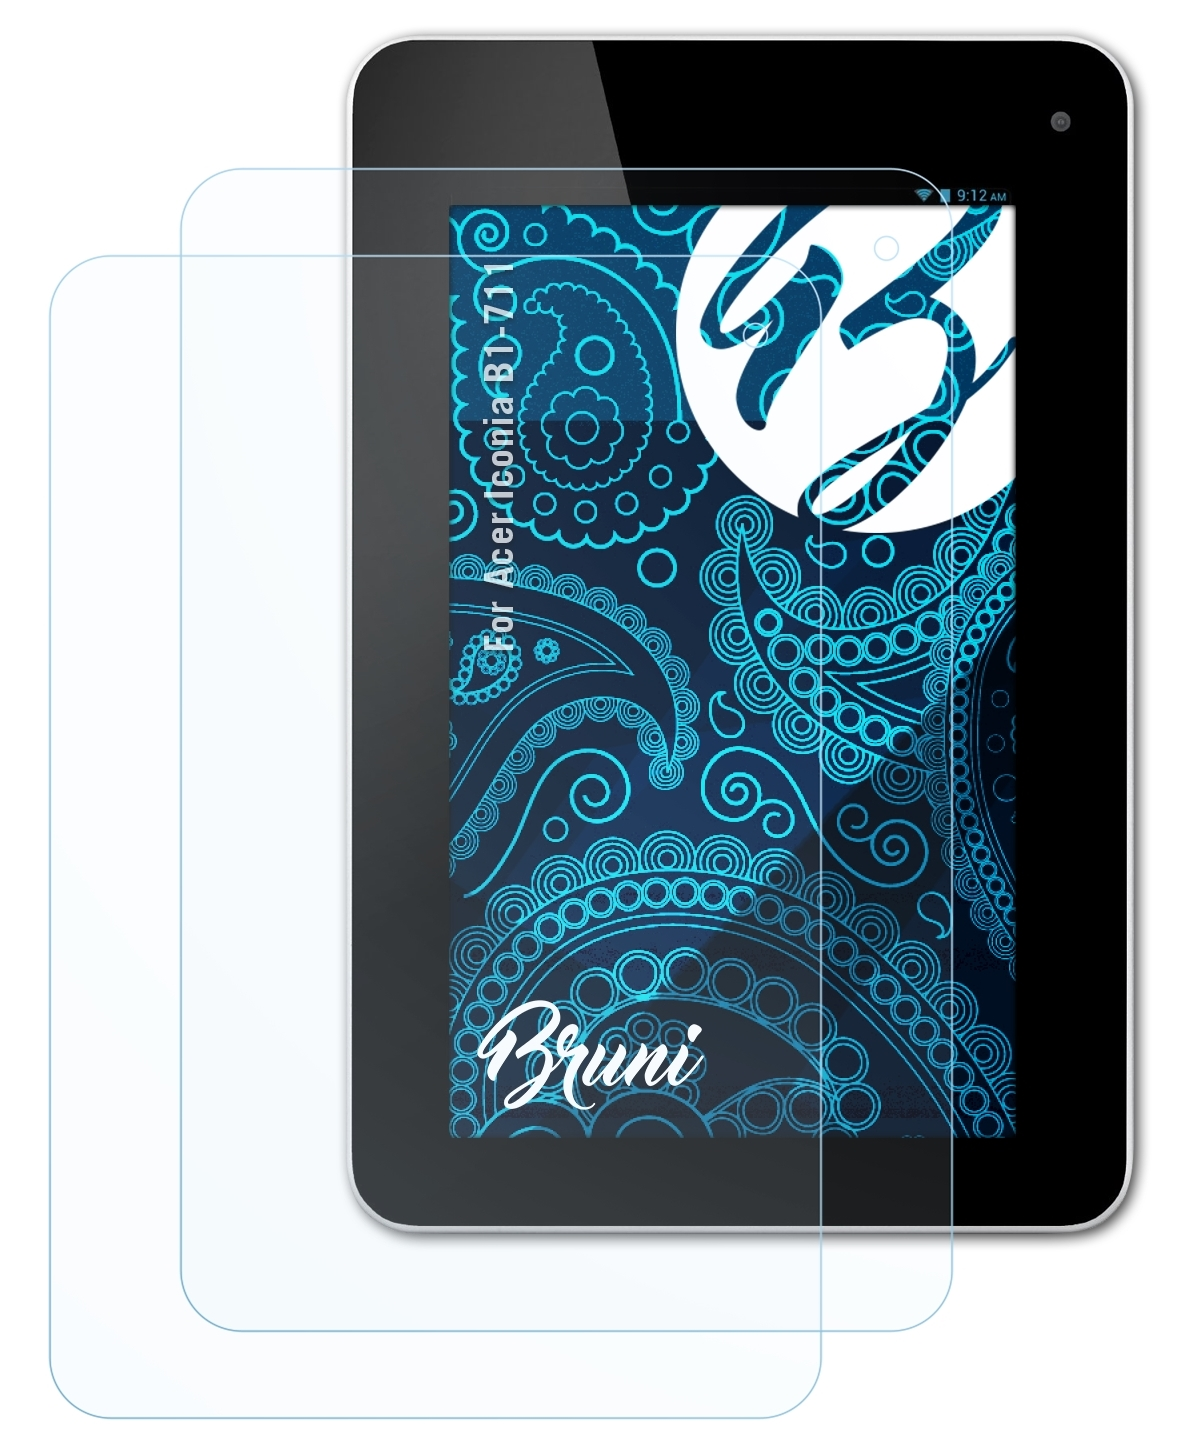 BRUNI 2x Basics-Clear Schutzfolie(für Acer Iconia B1-711)